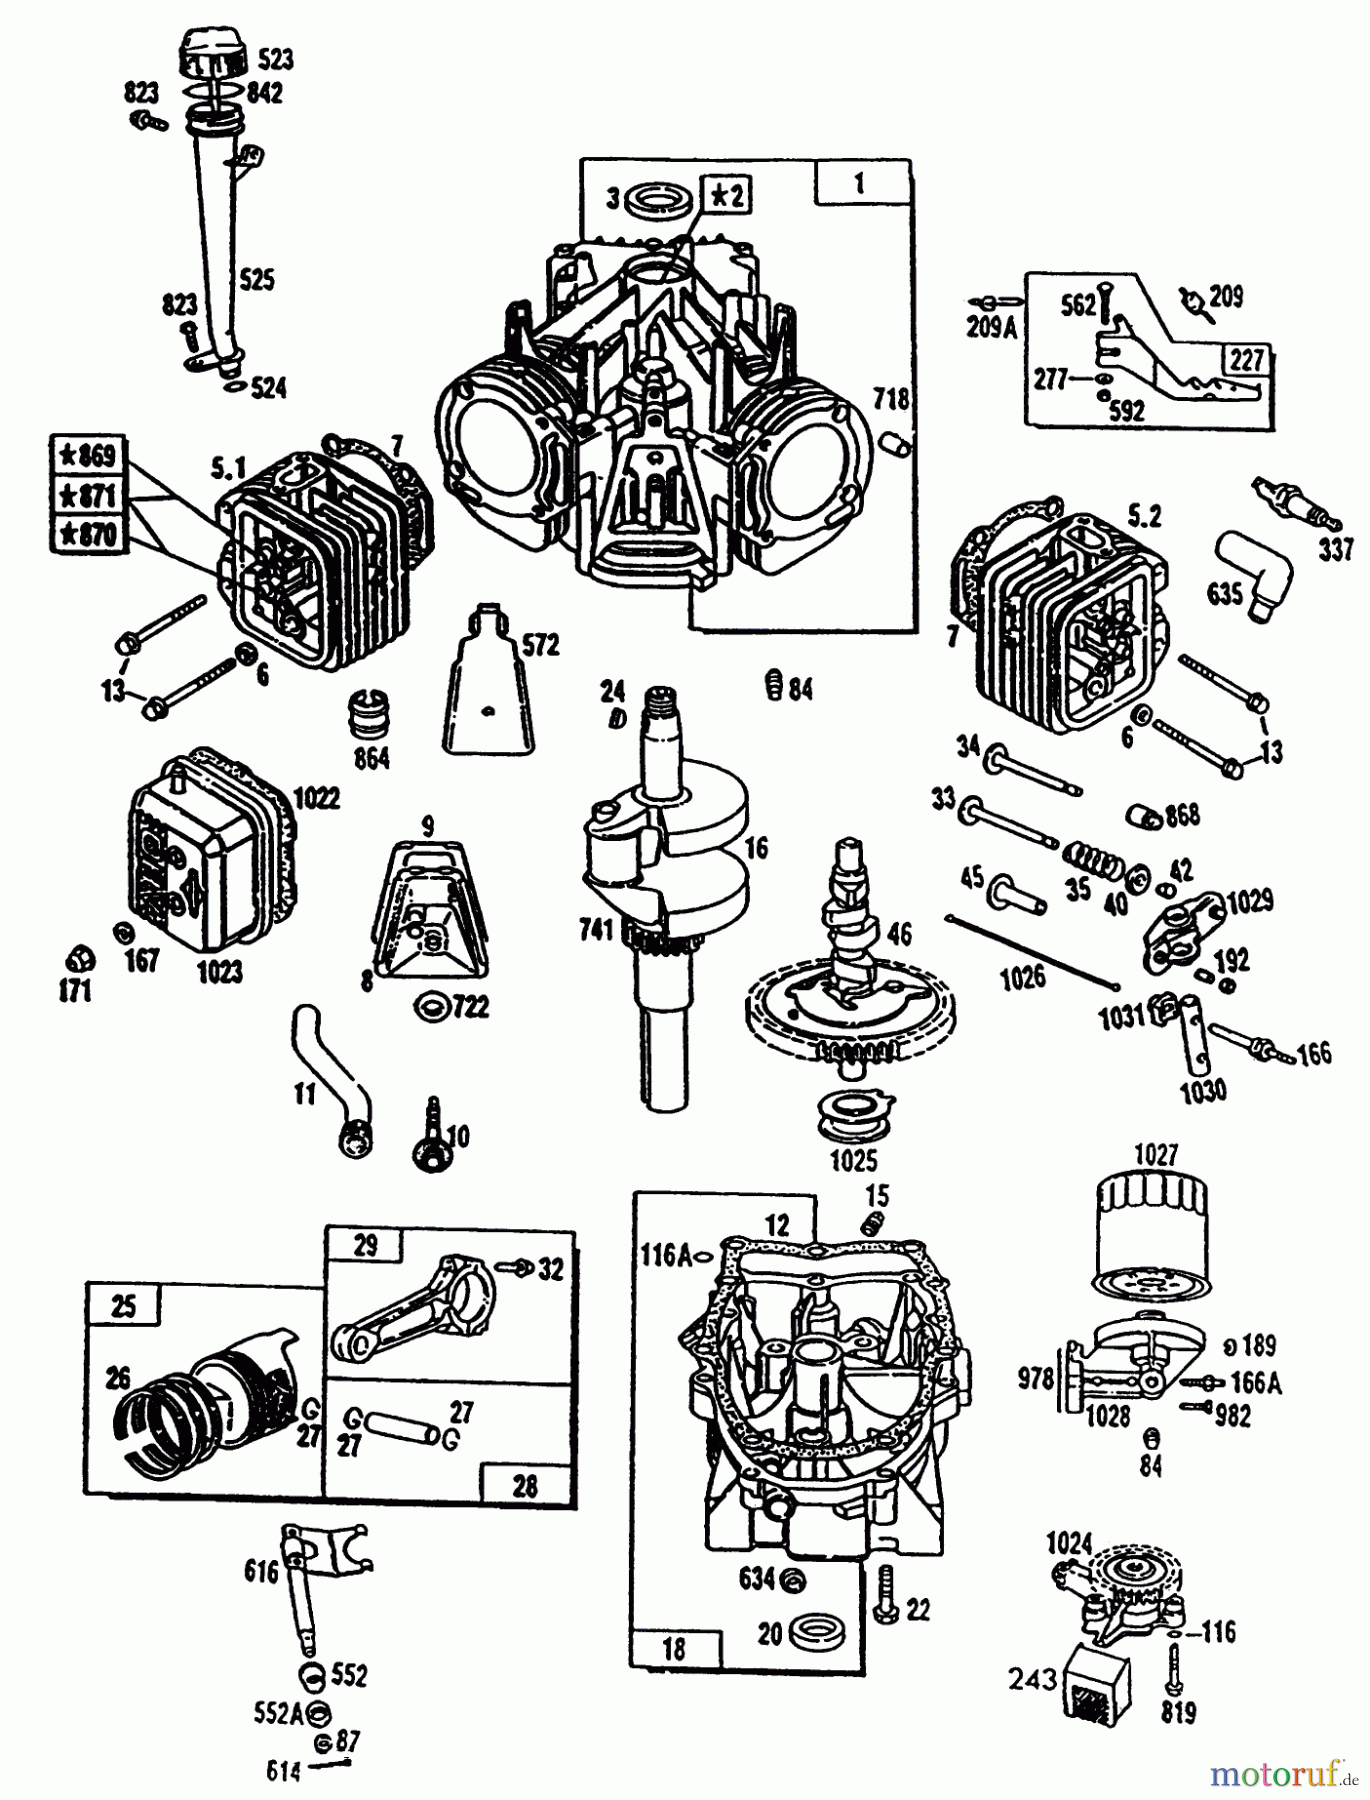  Toro Neu Mowers, Lawn & Garden Tractor Seite 1 72101 (246-H) - Toro 246-H Yard Tractor, 1993 (3900001-3999999) ENGINE TORO POWER PLUS #1